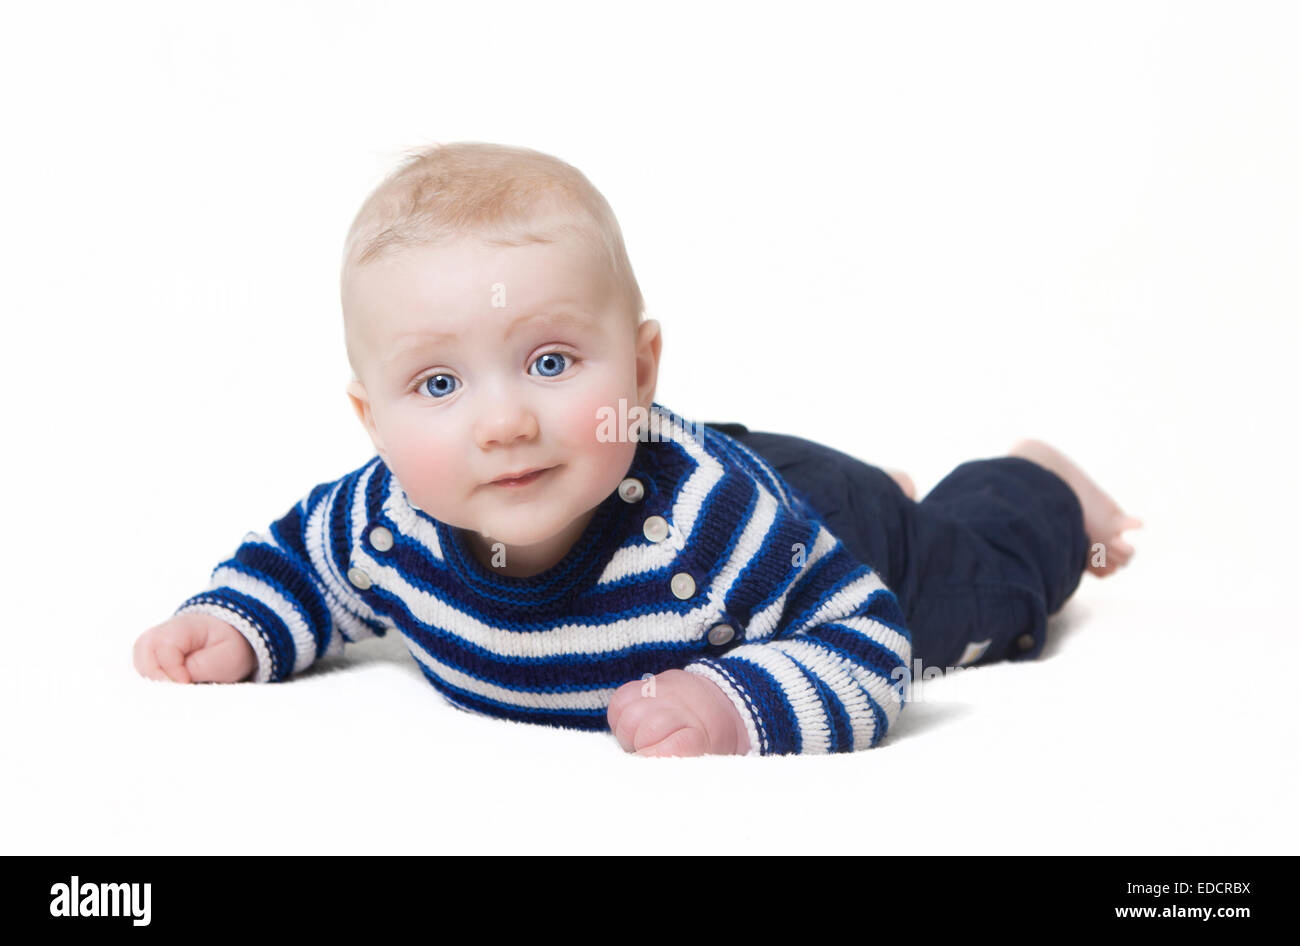 Bébé avec les yeux bleus couché looking at camera, fond blanc Banque D'Images